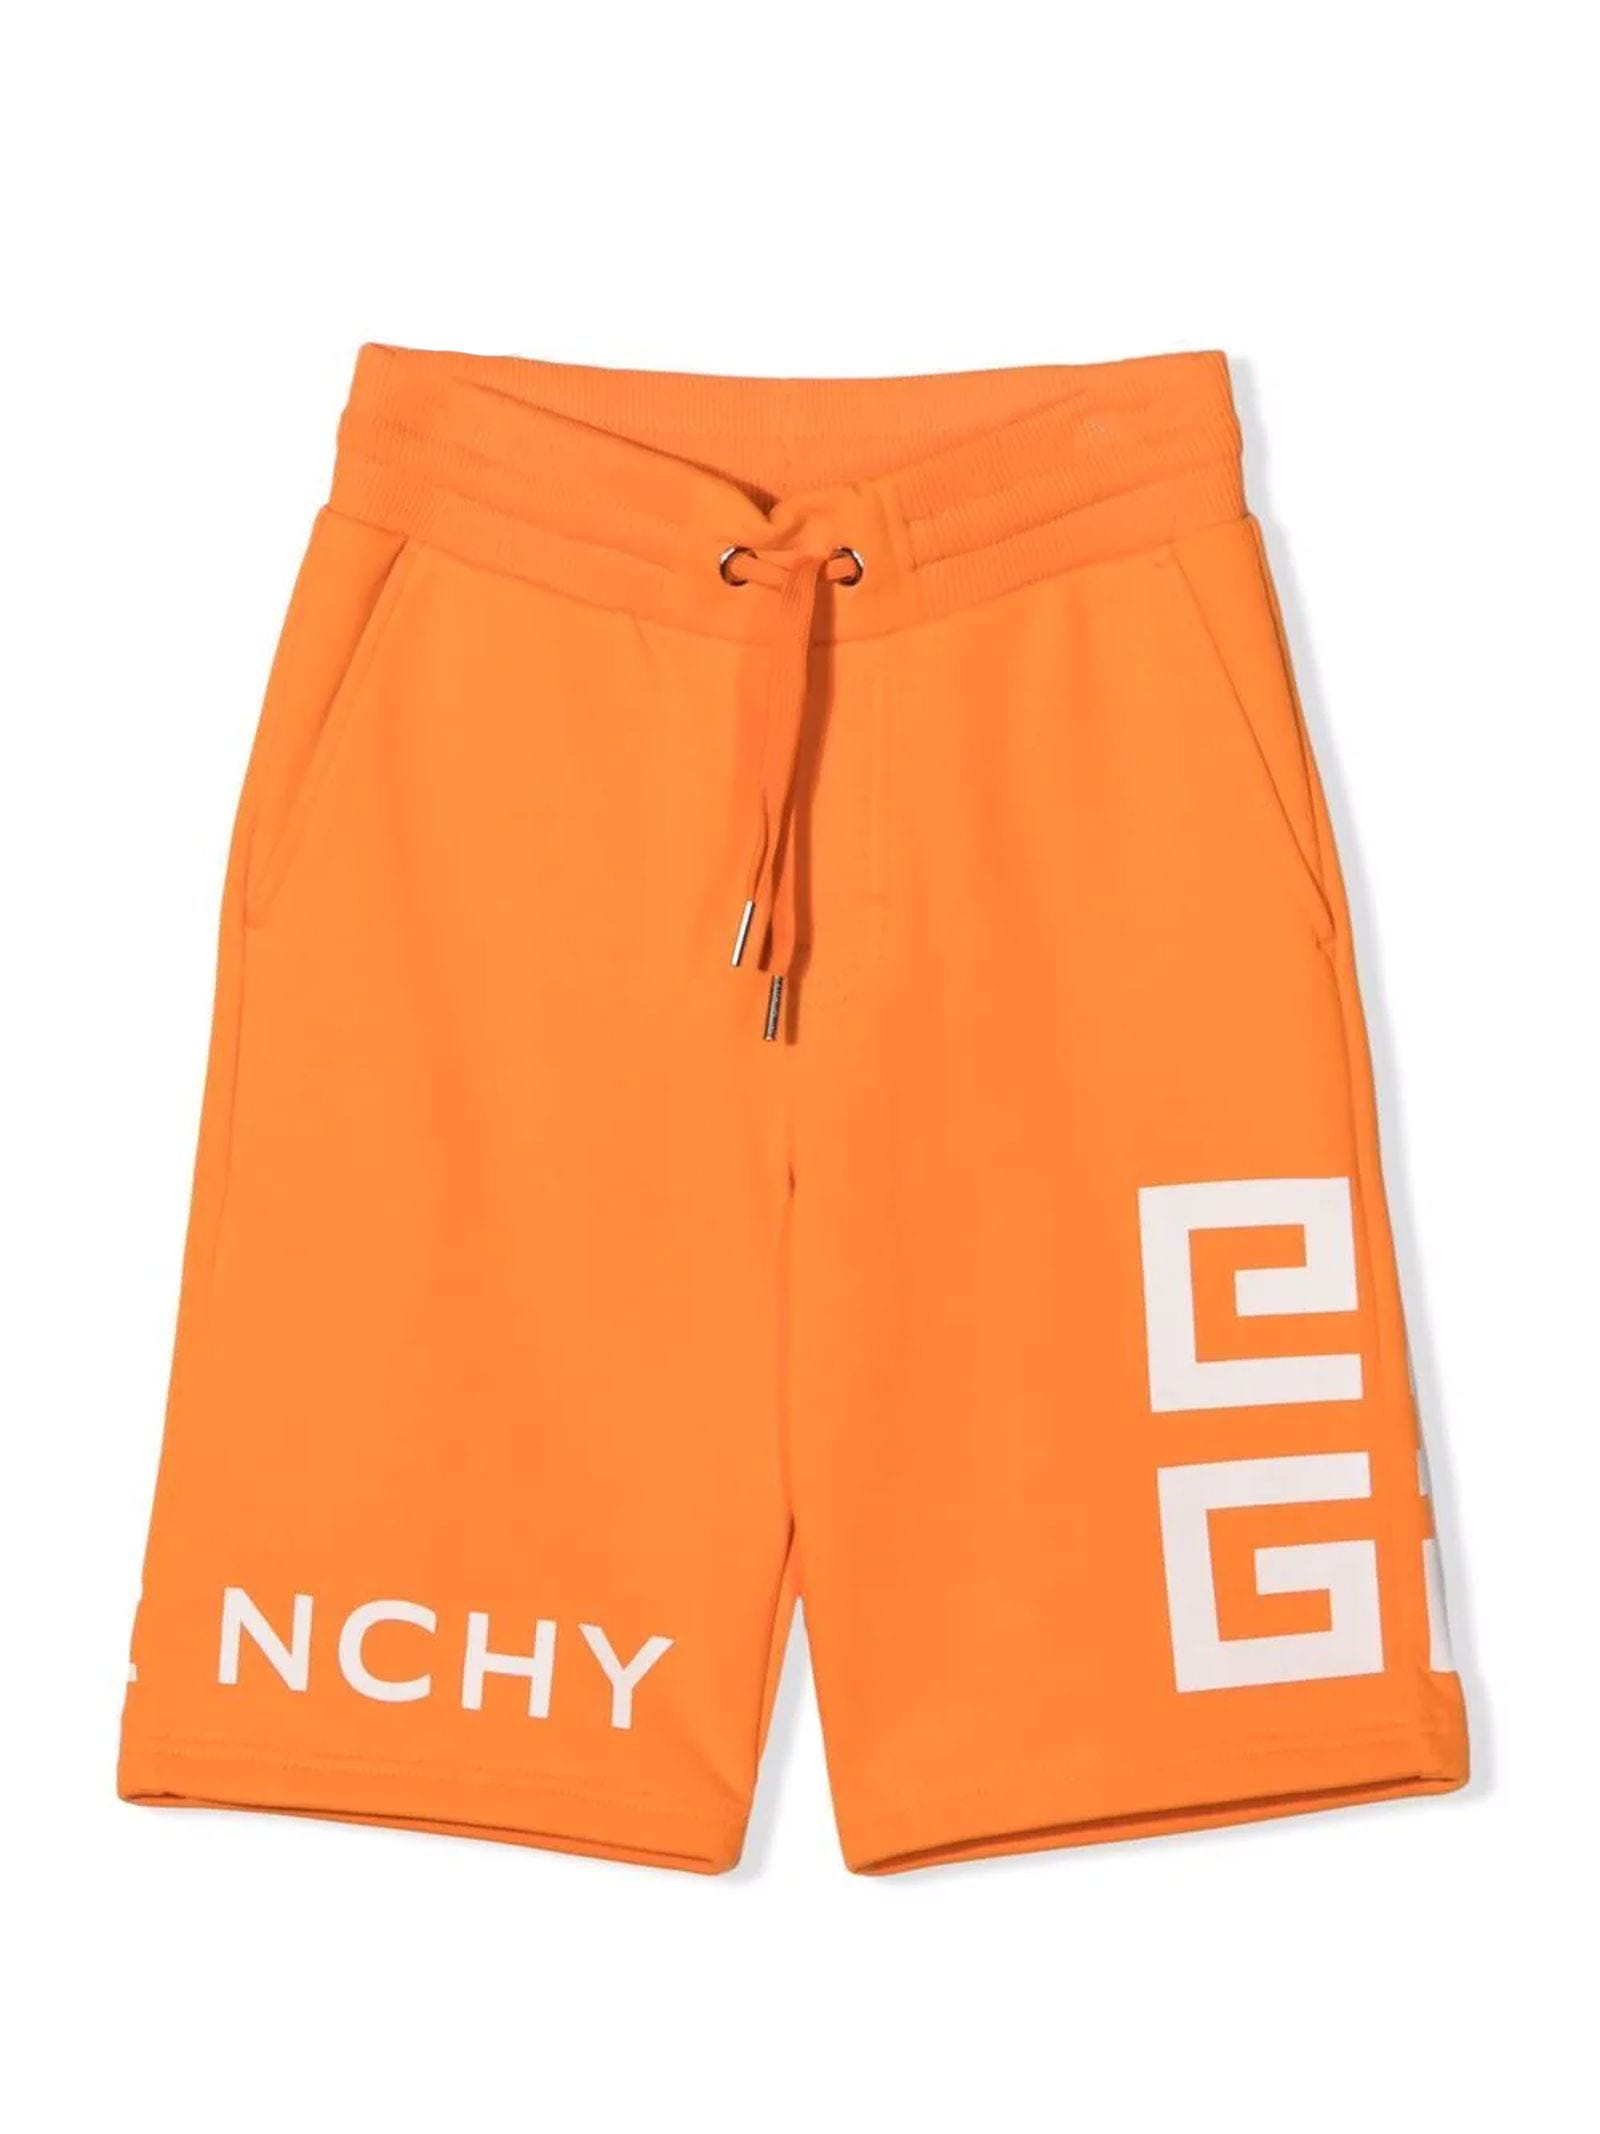 Givenchy Orange Cotton Shorts